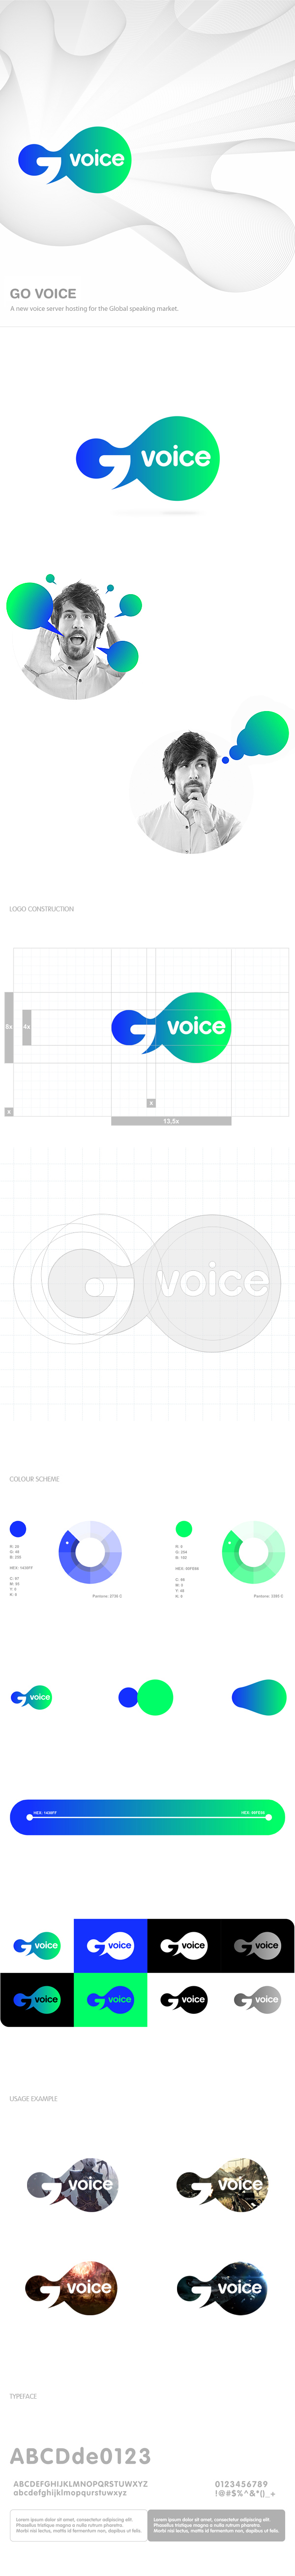 go voice logo